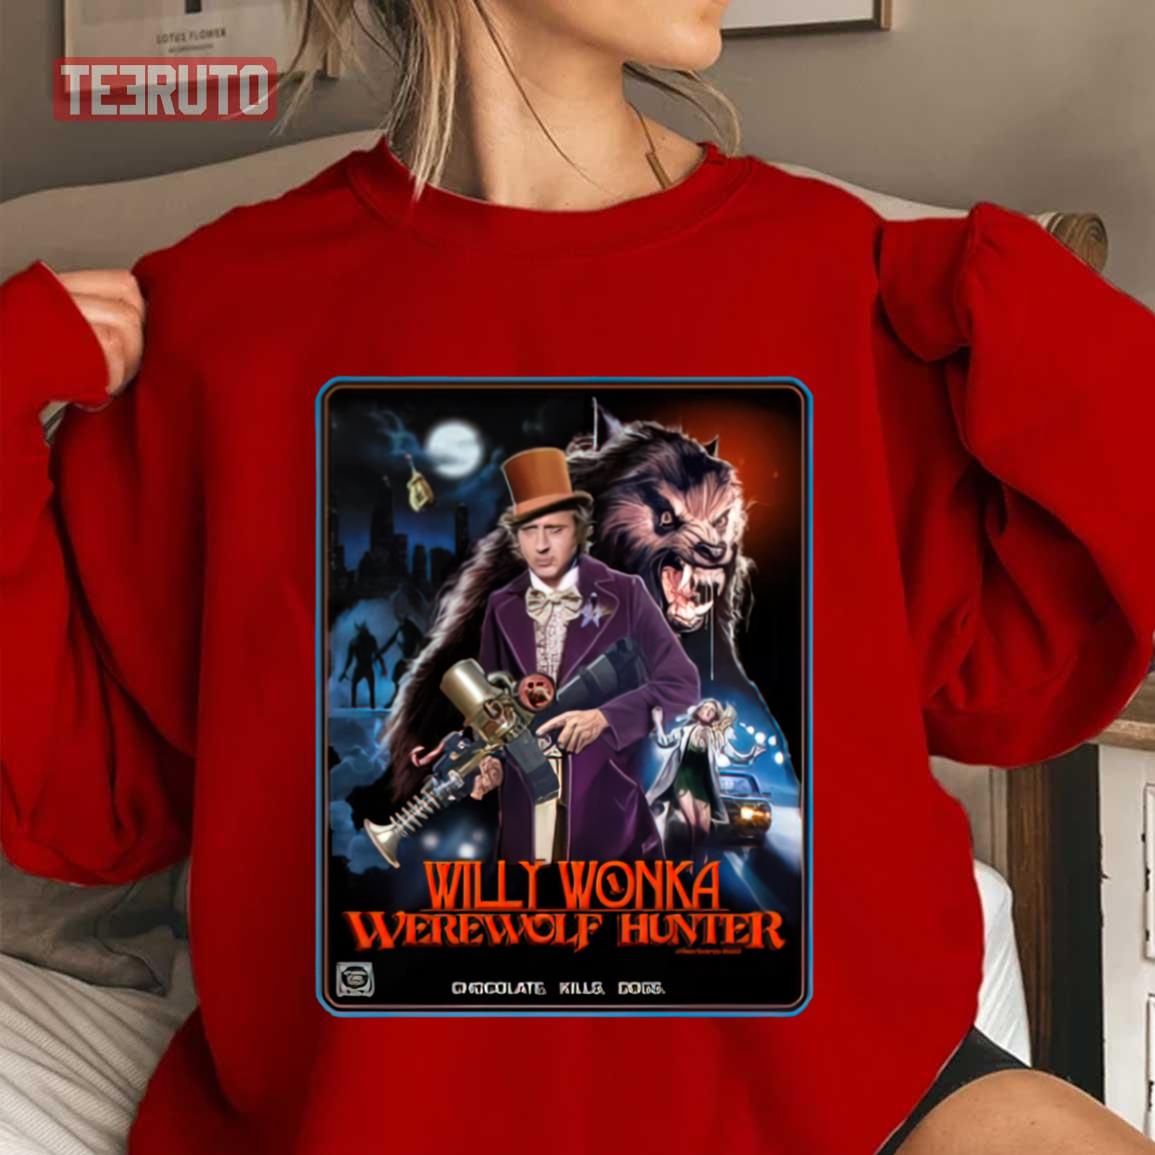 Willy Wonka Werewolf Hunter Unisex Sweatshirt